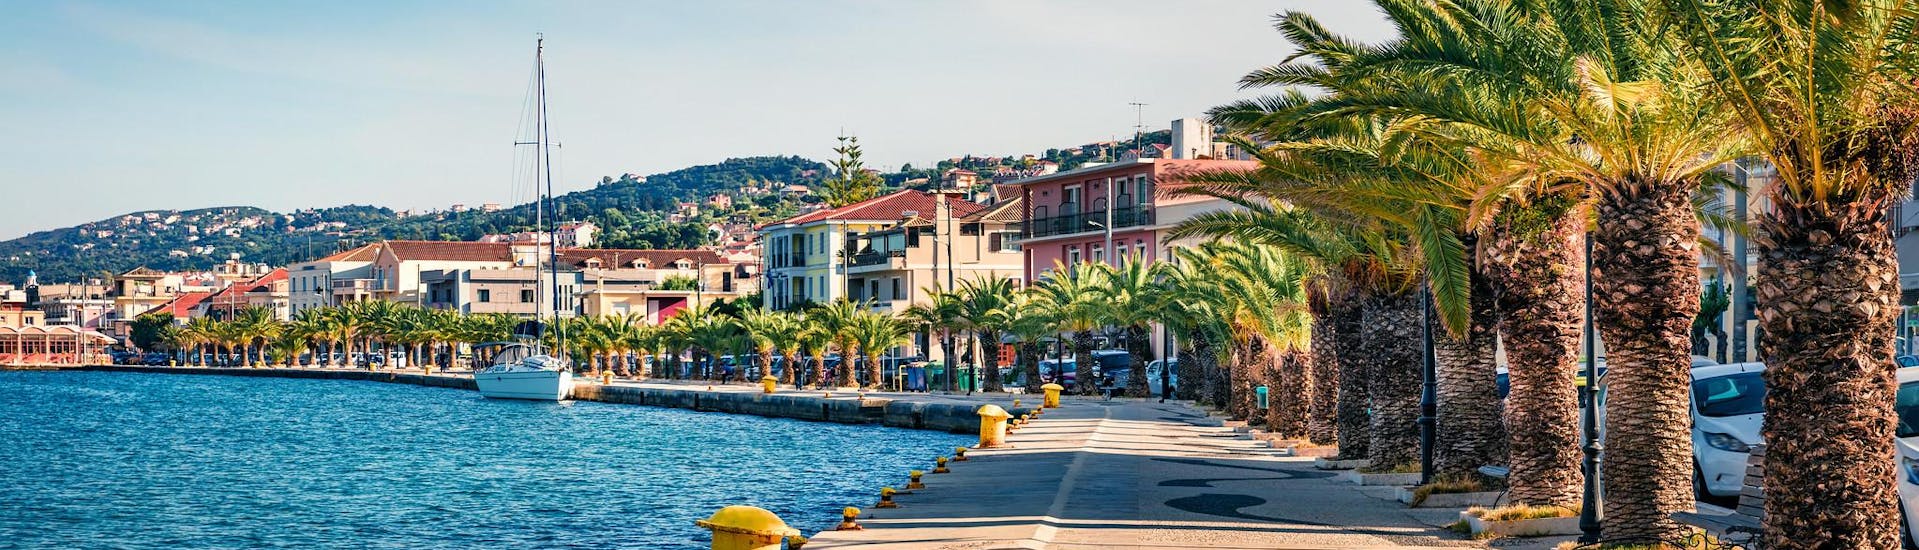 Vue du port d'Argostoli, un magnifique point de départ pour les excursions en bateau sur l'île de Céphalonie, en Grèce.